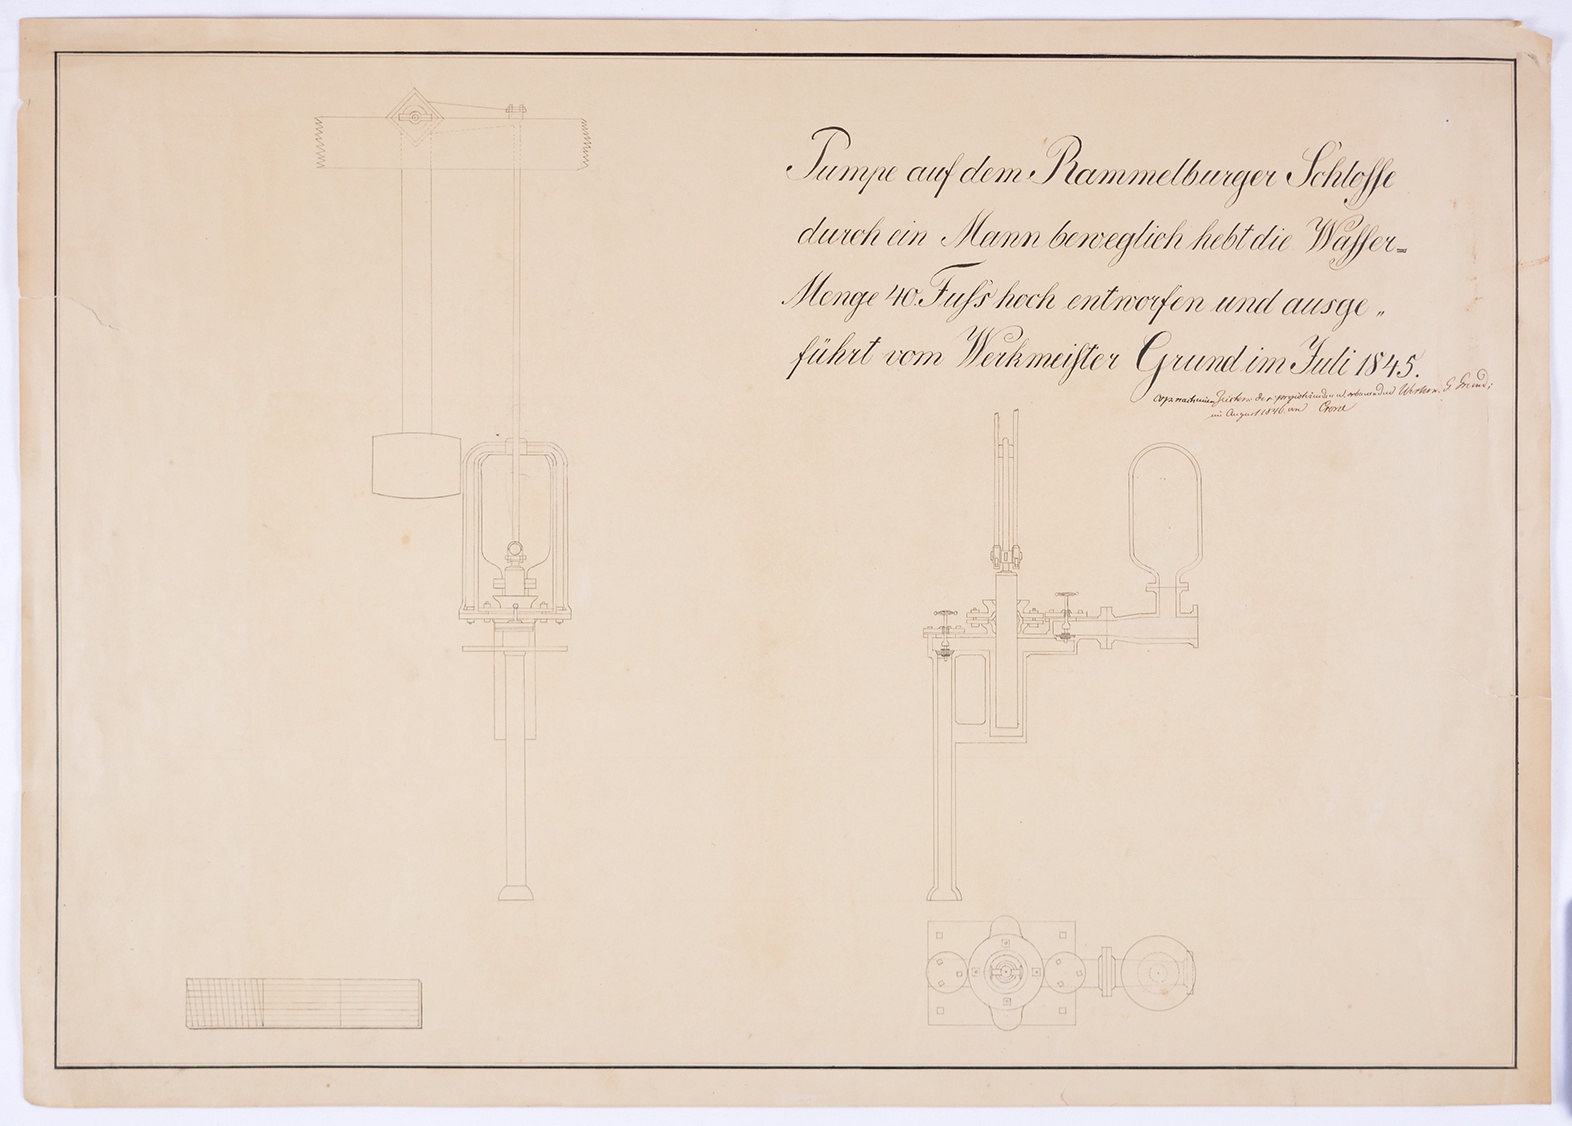 Pumpe auf dem Rammelburger Schlosse durch ein Mann beweglich hebt die Wasser-Menge 40 Fuss hoch entworfen und ausgeführt vom Werkmeister Grund im Juli 1845. (Mansfeld-Museum im Humboldt-Schloss CC BY-NC-SA)